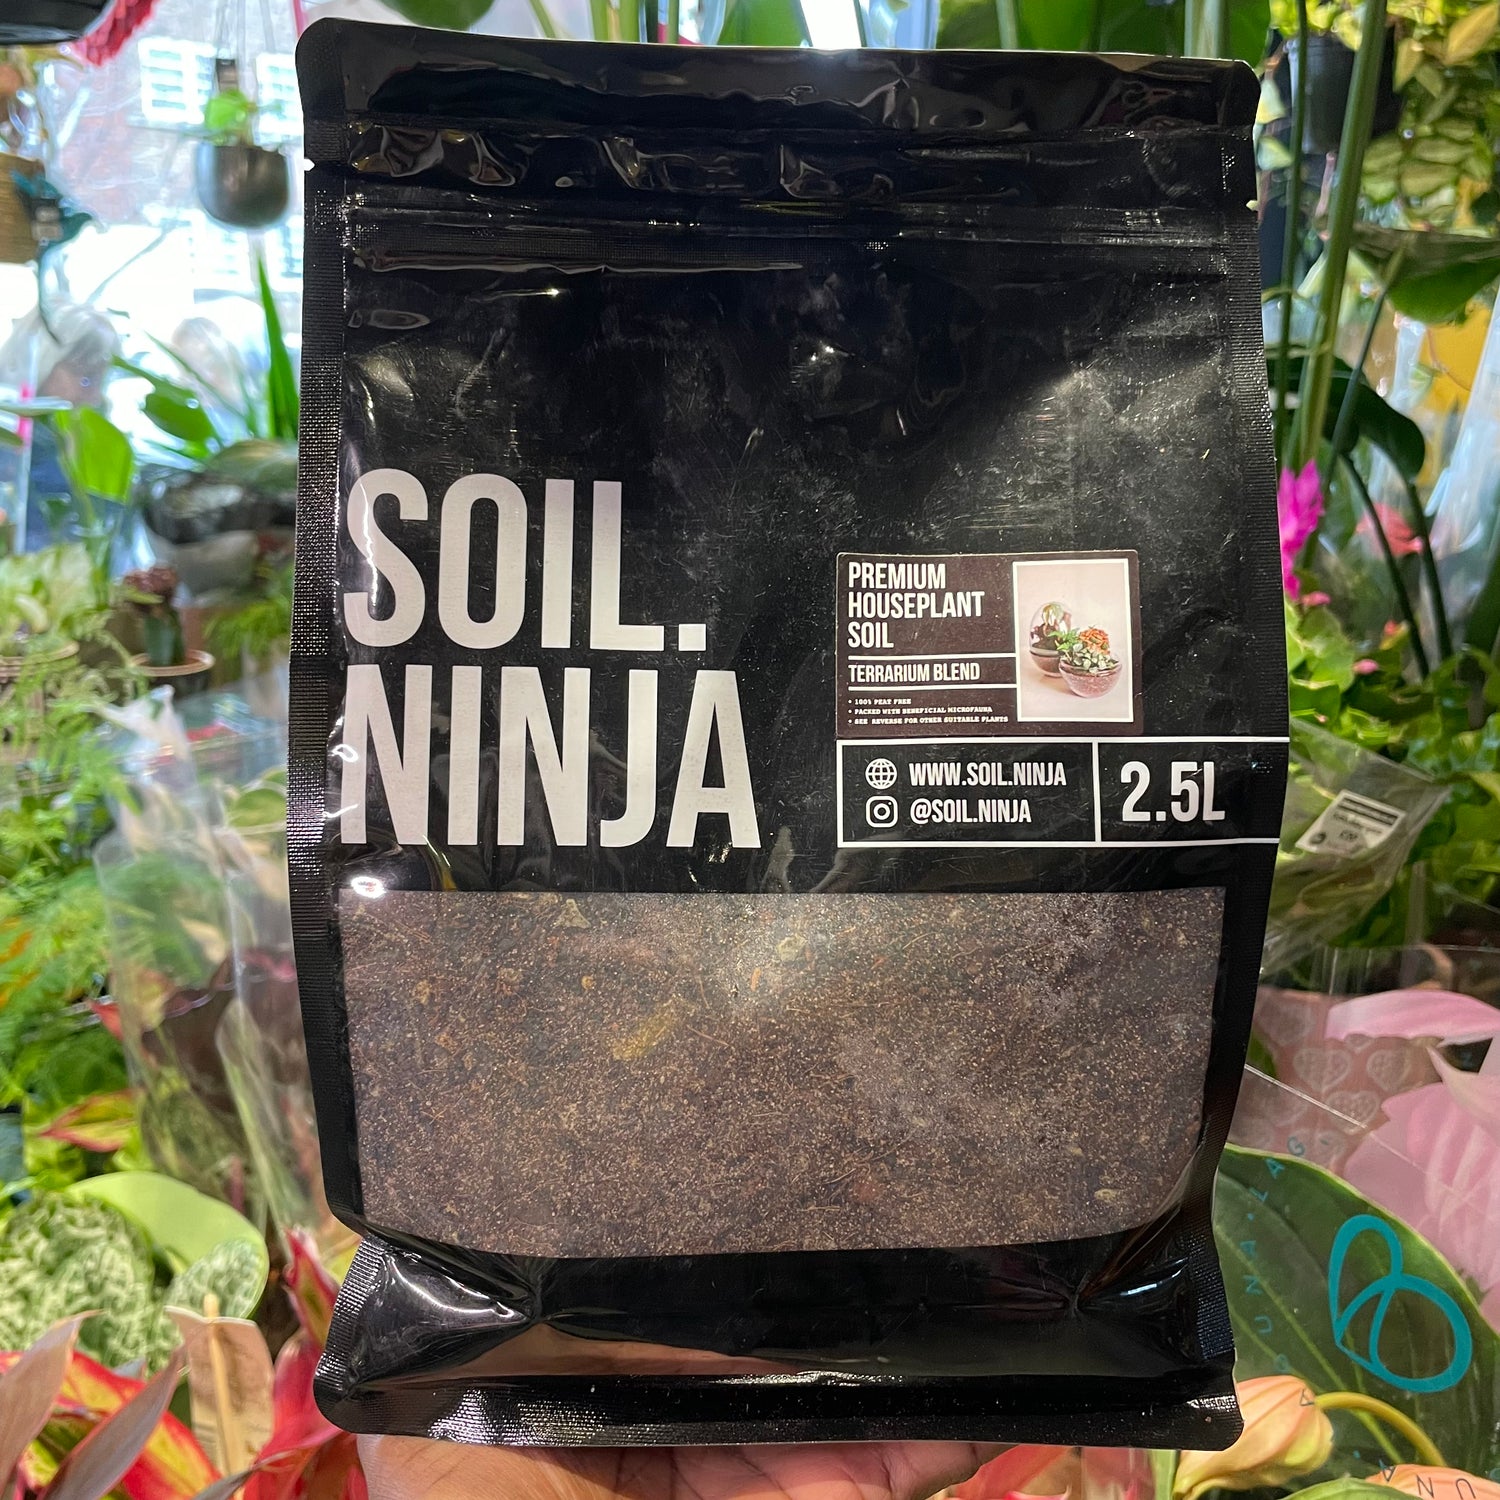 A bag of Soil Ninja | Terrarium 2.5L in Urban Tropicana’s store in Chiswick, London.